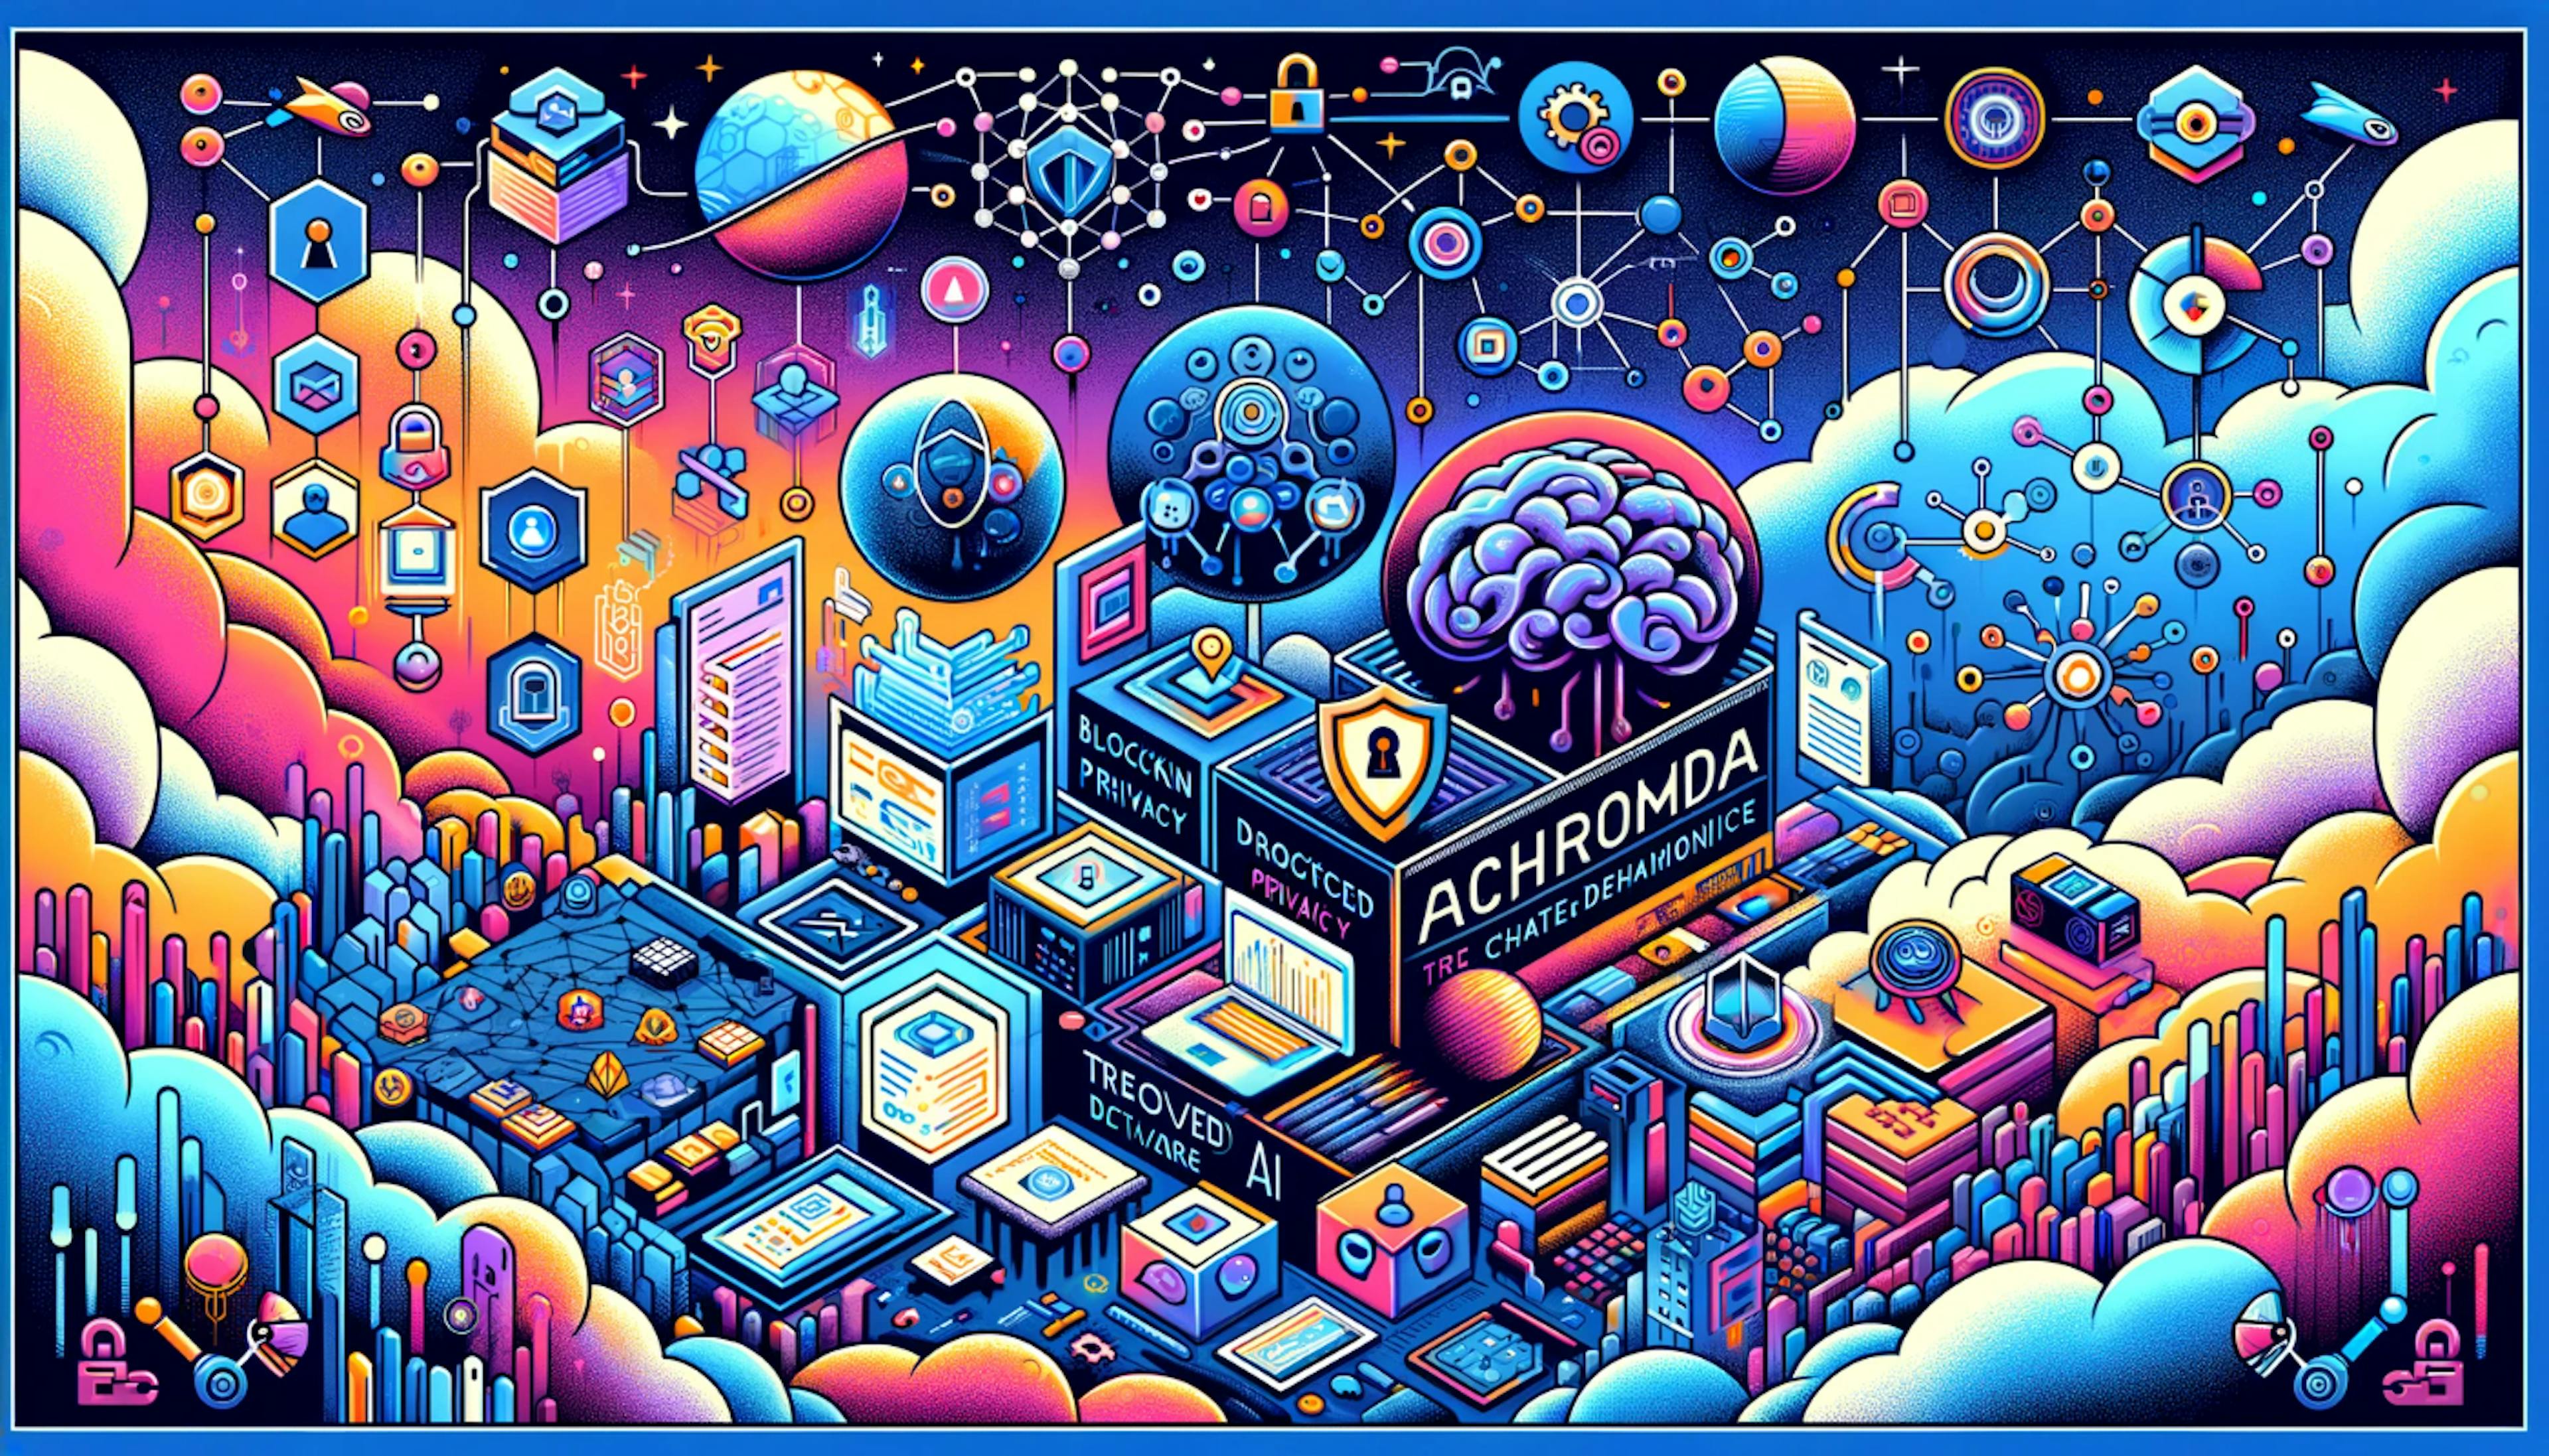 featured image - Cheqd, Andromeda và AI được phát triển: Hợp tác để xây dựng một thế giới kỹ thuật số lấy niềm tin làm trung tâm